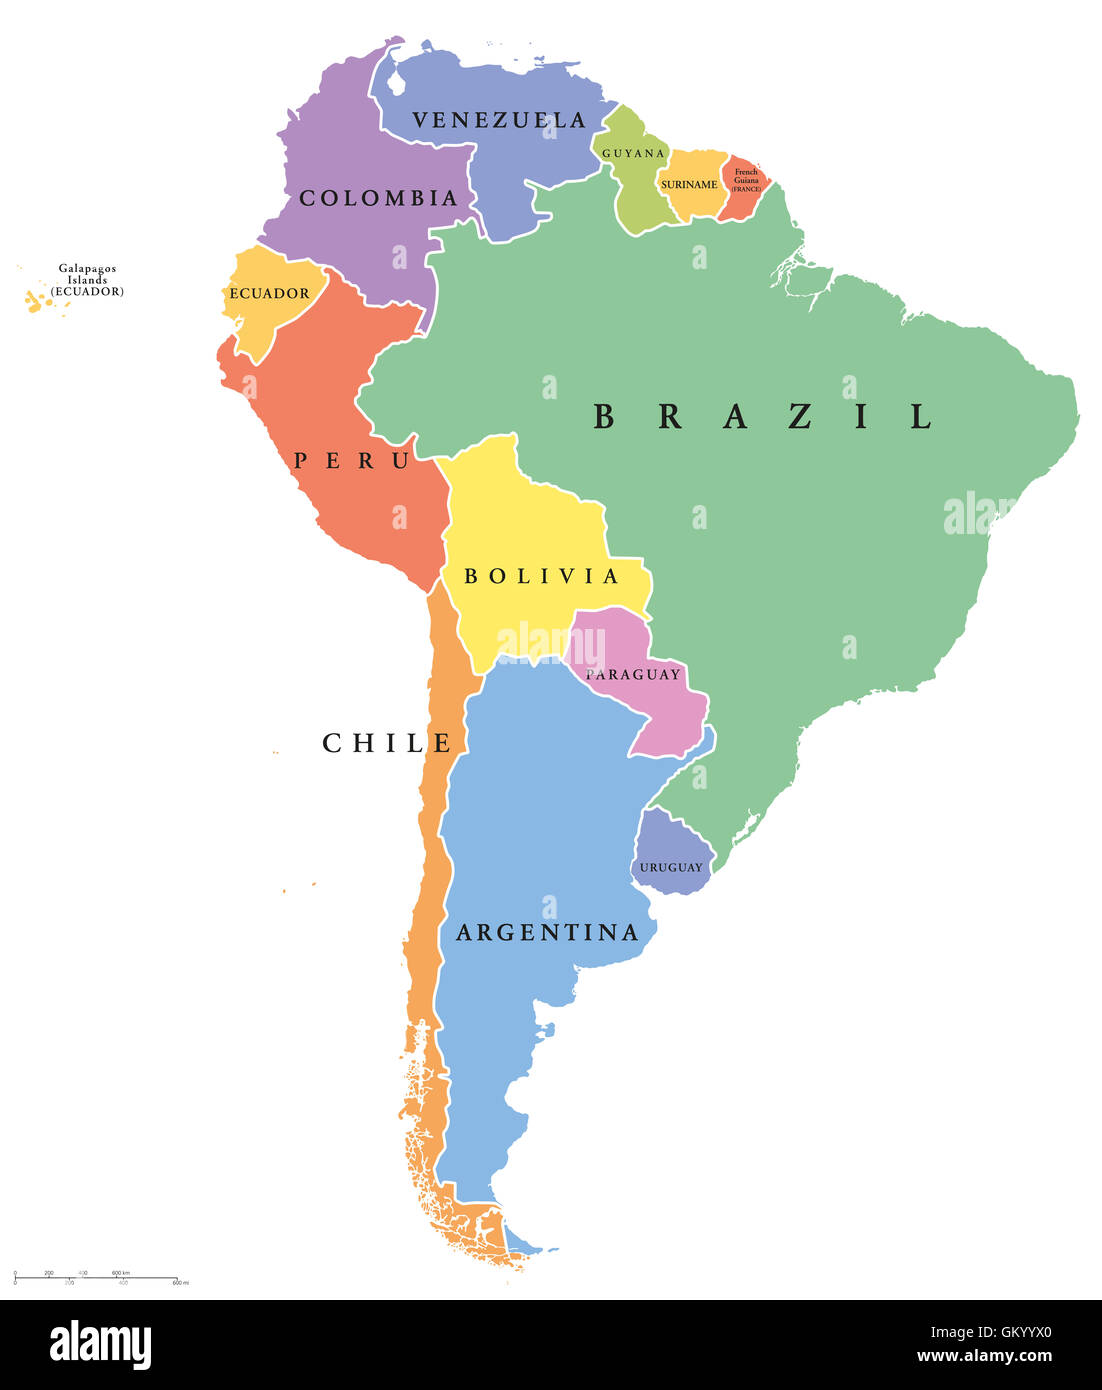 América del Sur solo miembros mapa político. Todos los países en diferentes colores, con las fronteras nacionales y los nombres de países. Foto de stock